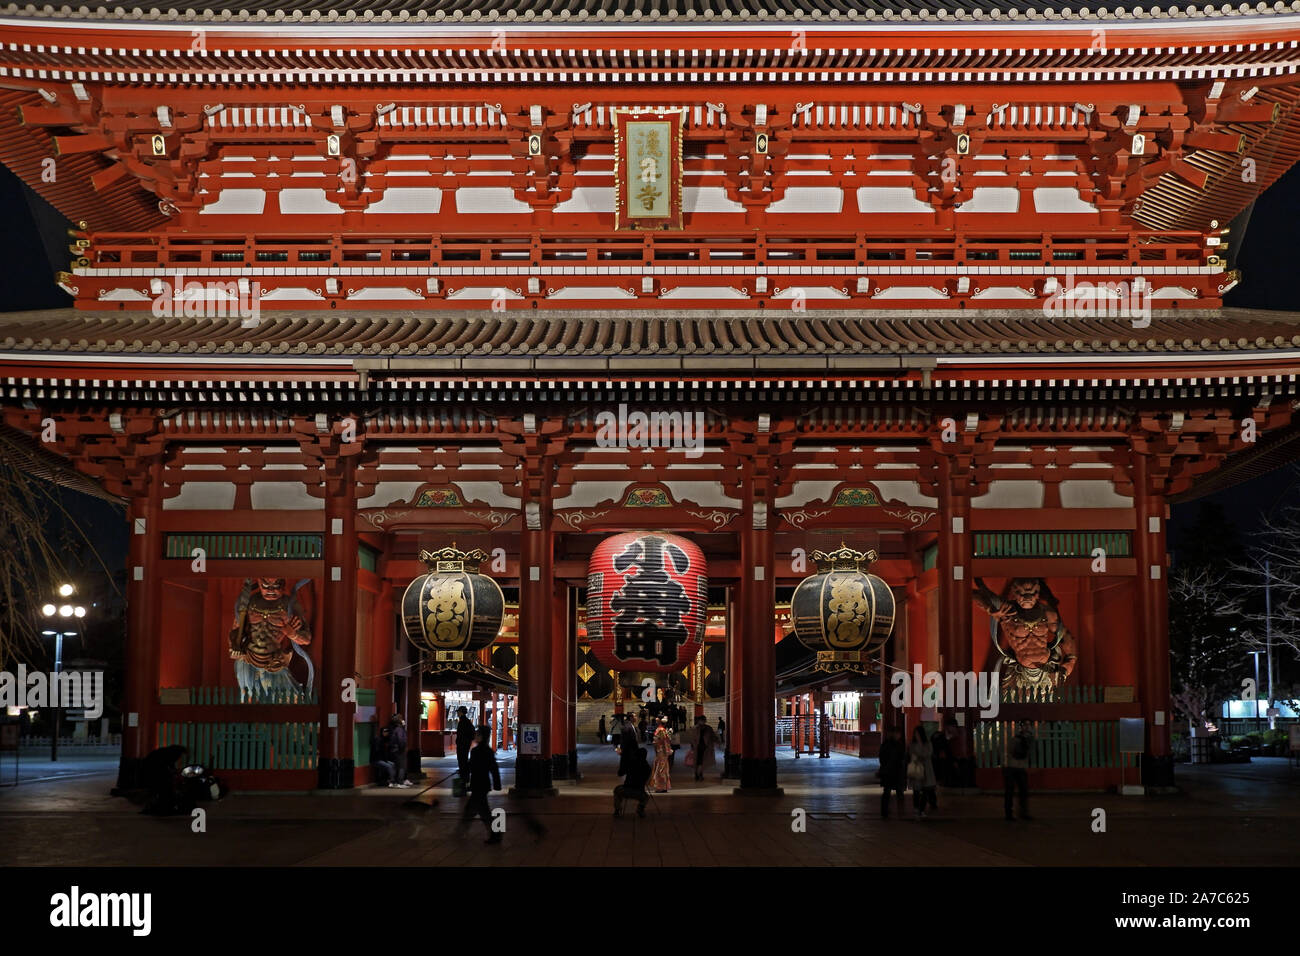 L'ancien bâtiment historique Temple japonais zen au Japon city at night Banque D'Images